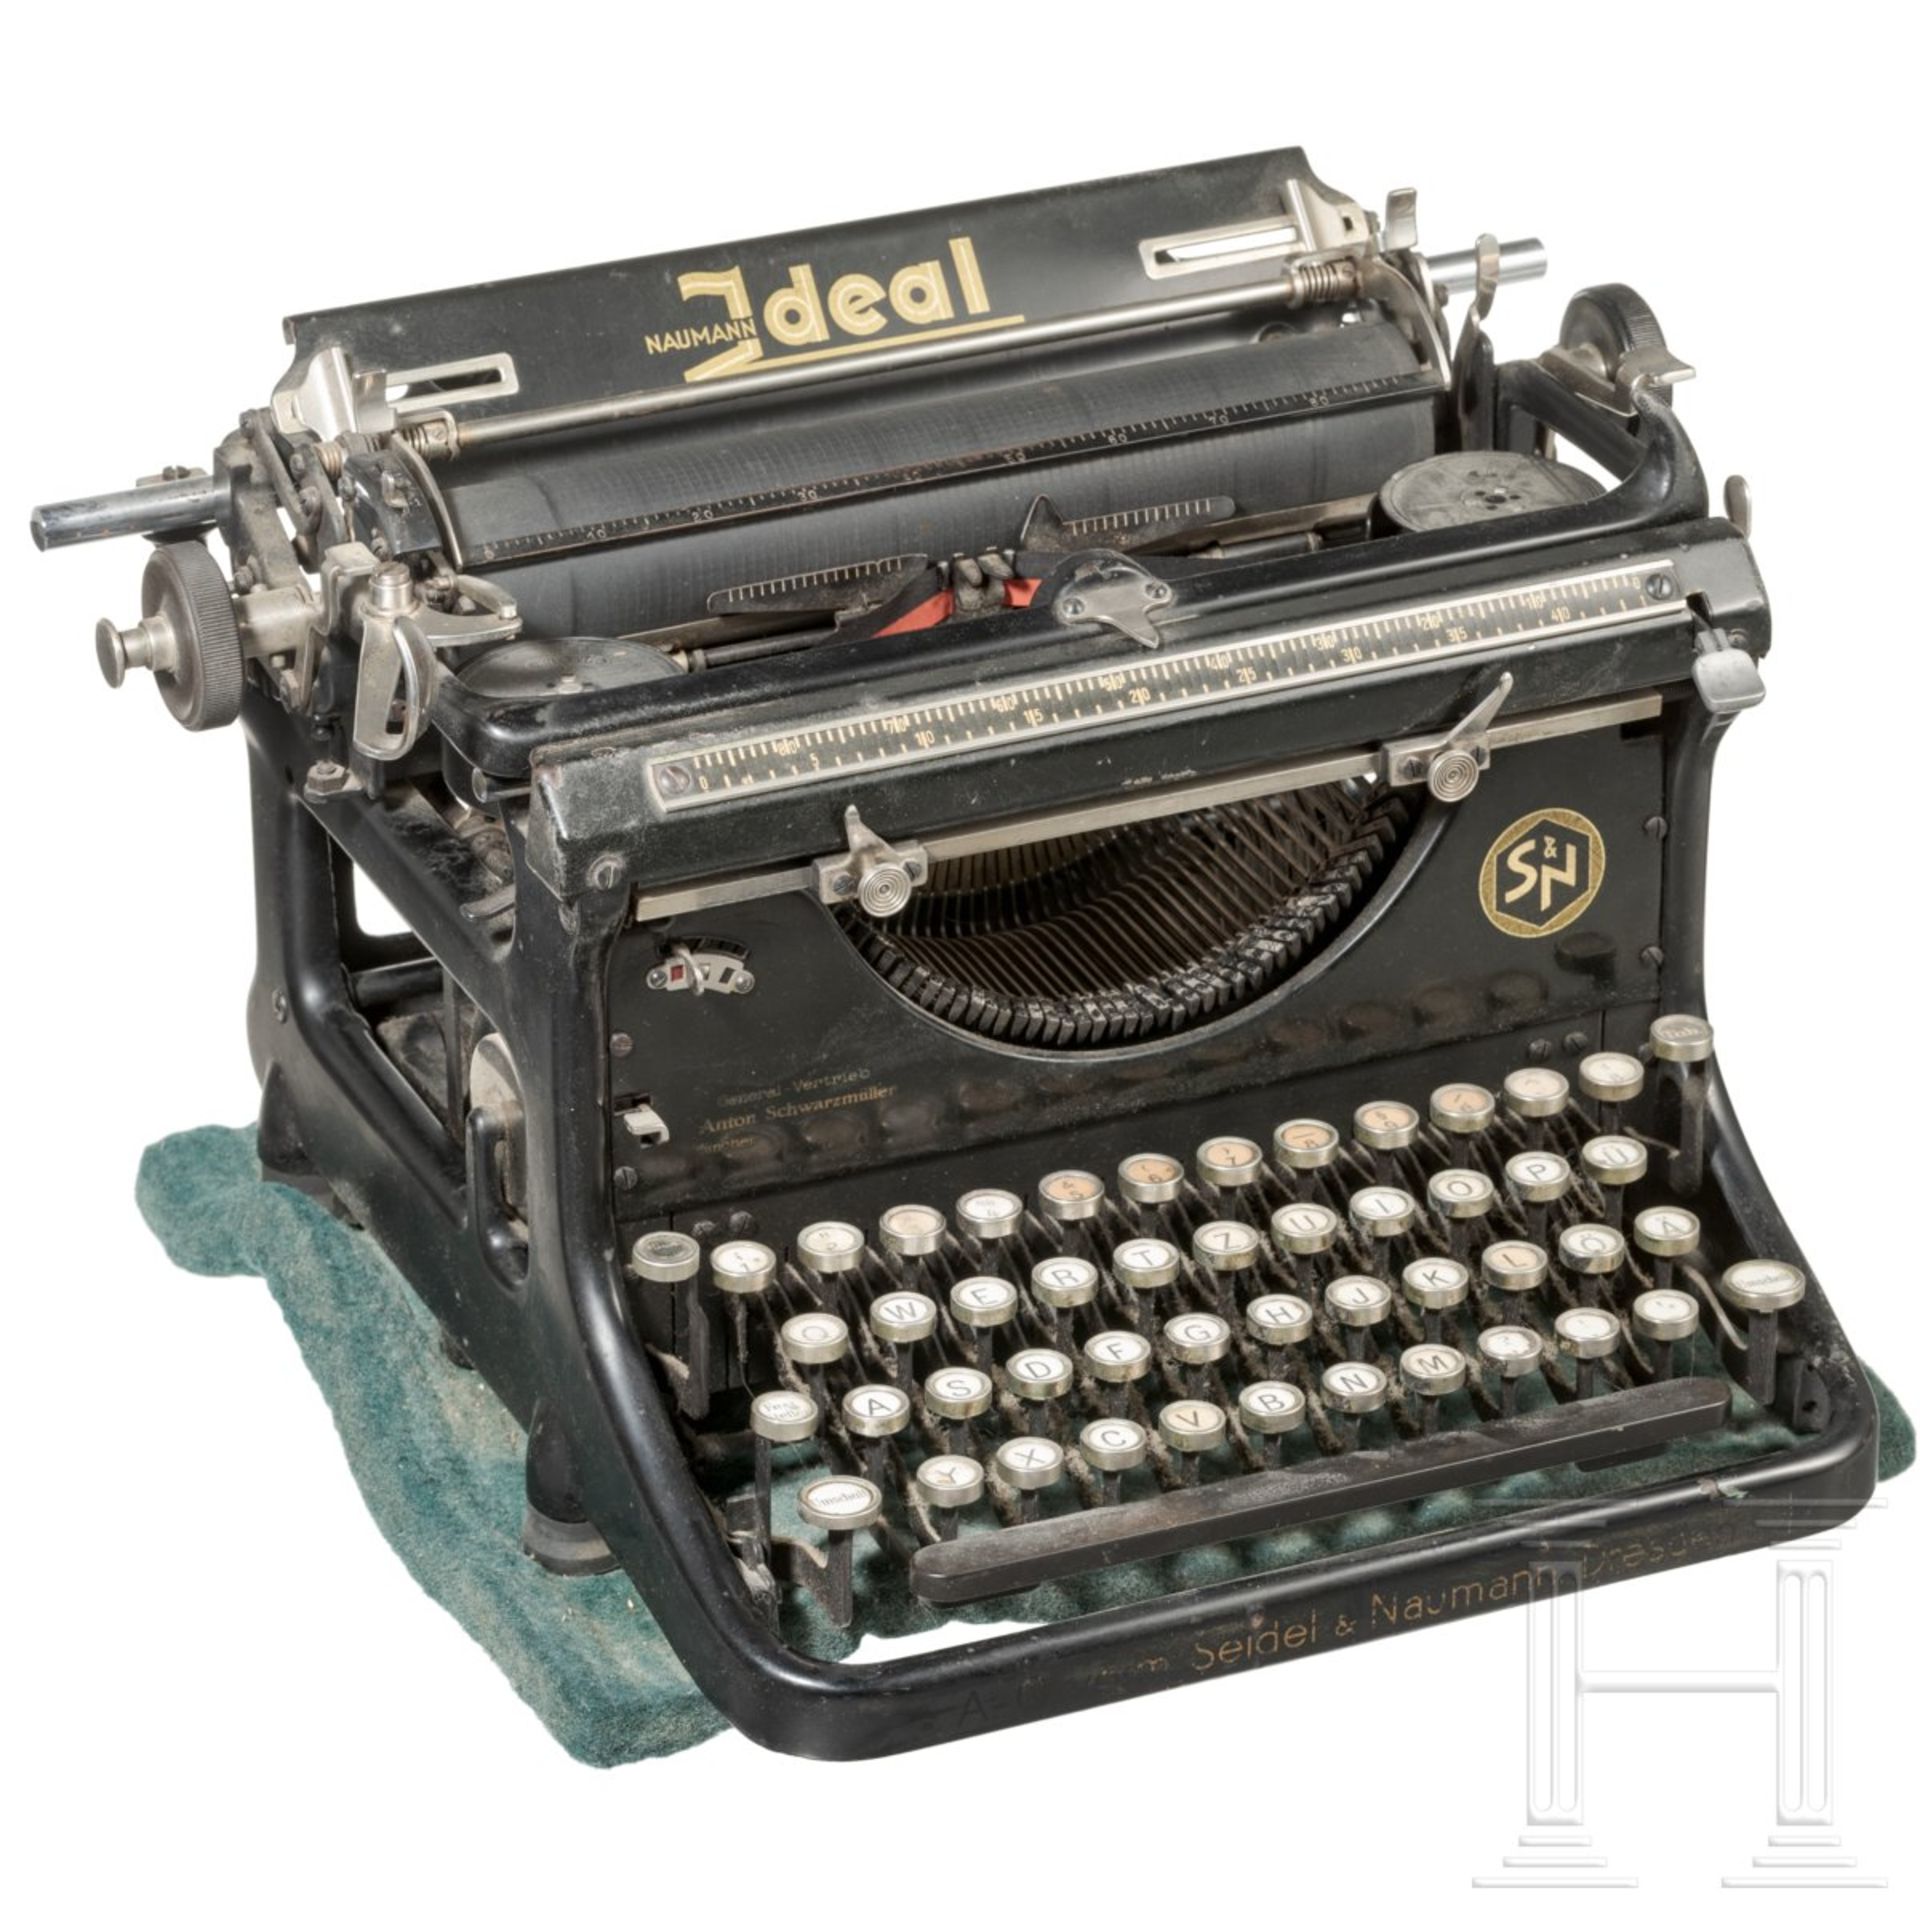 <de>Ilse Heß – Schreibmaschine "Ideal" aus dem persönlichen Sekretariat<br>Große, schwere Tischschre